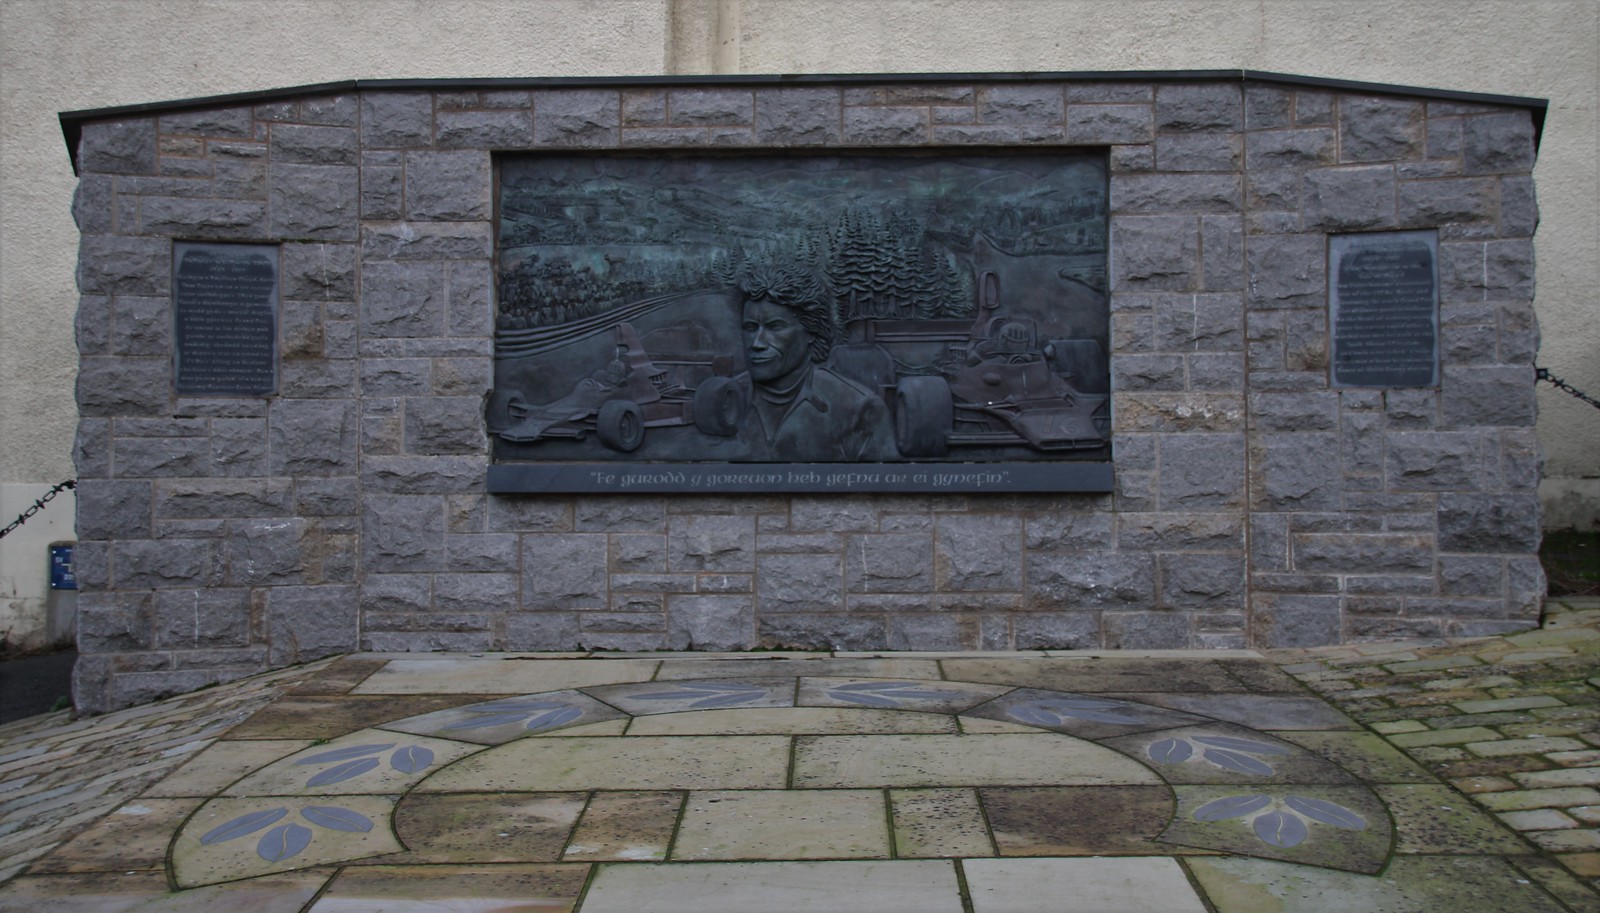 Tom Maldwyn Pryce Memorial By Neil Dalrymple's, Ruthin, Denbighshire, Wales.